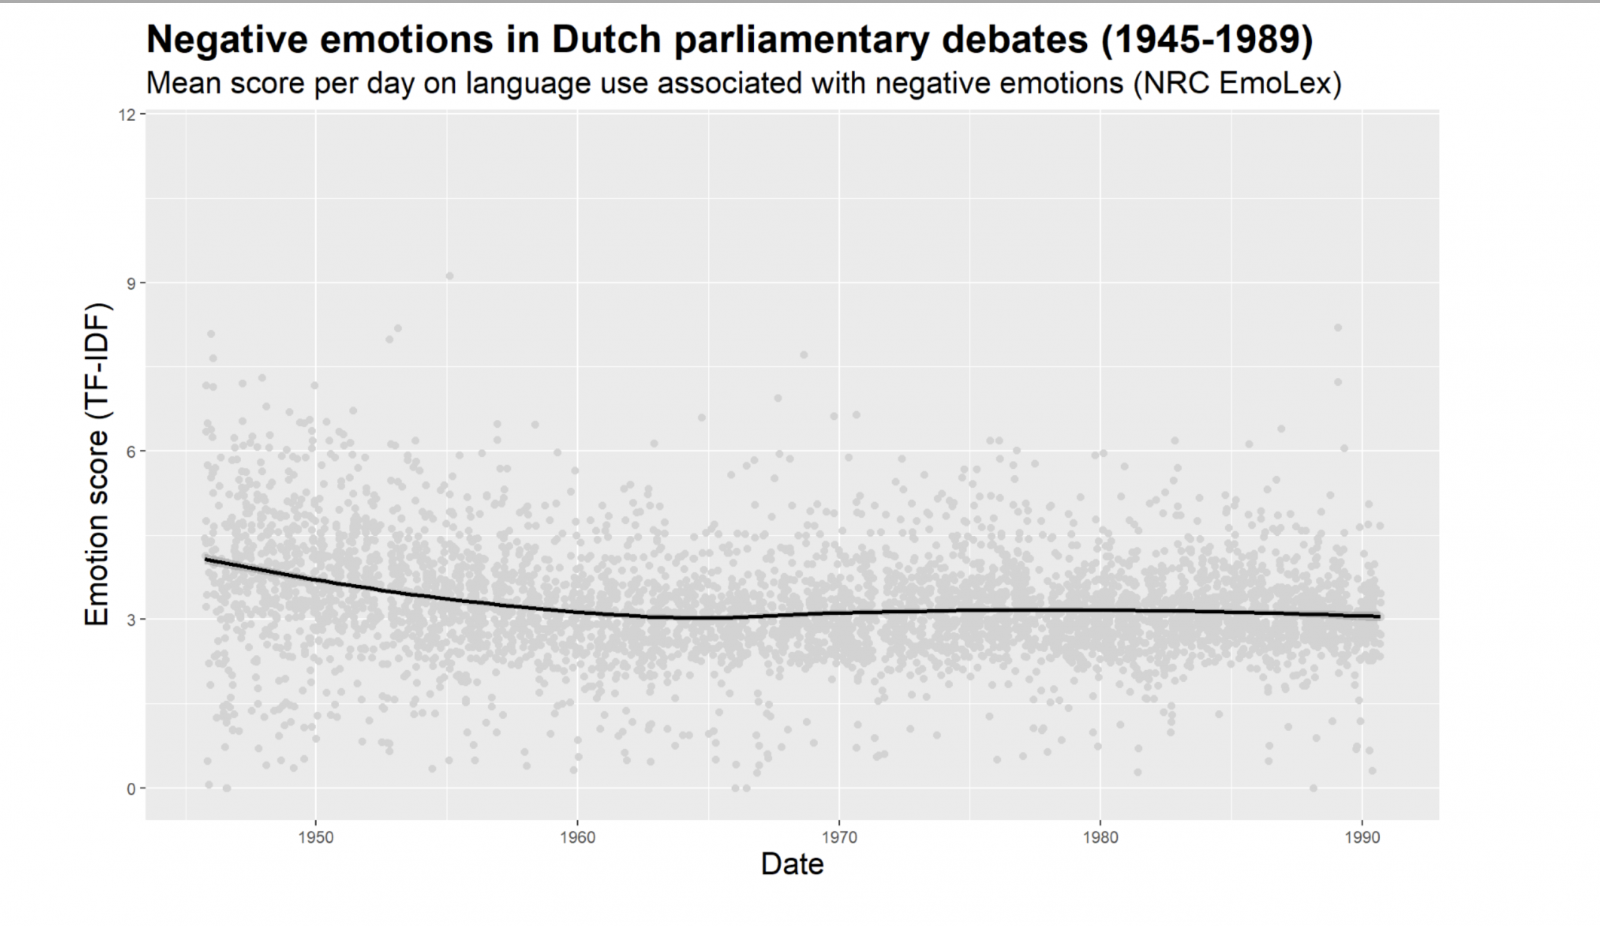 Scores van parlementaire debatten op negatieve emotionele taal. De grijze punten geven de gemiddelde score per dag weer, de zwarte lijn het voortschrijdend gemiddelde over de periode 1945-1989.